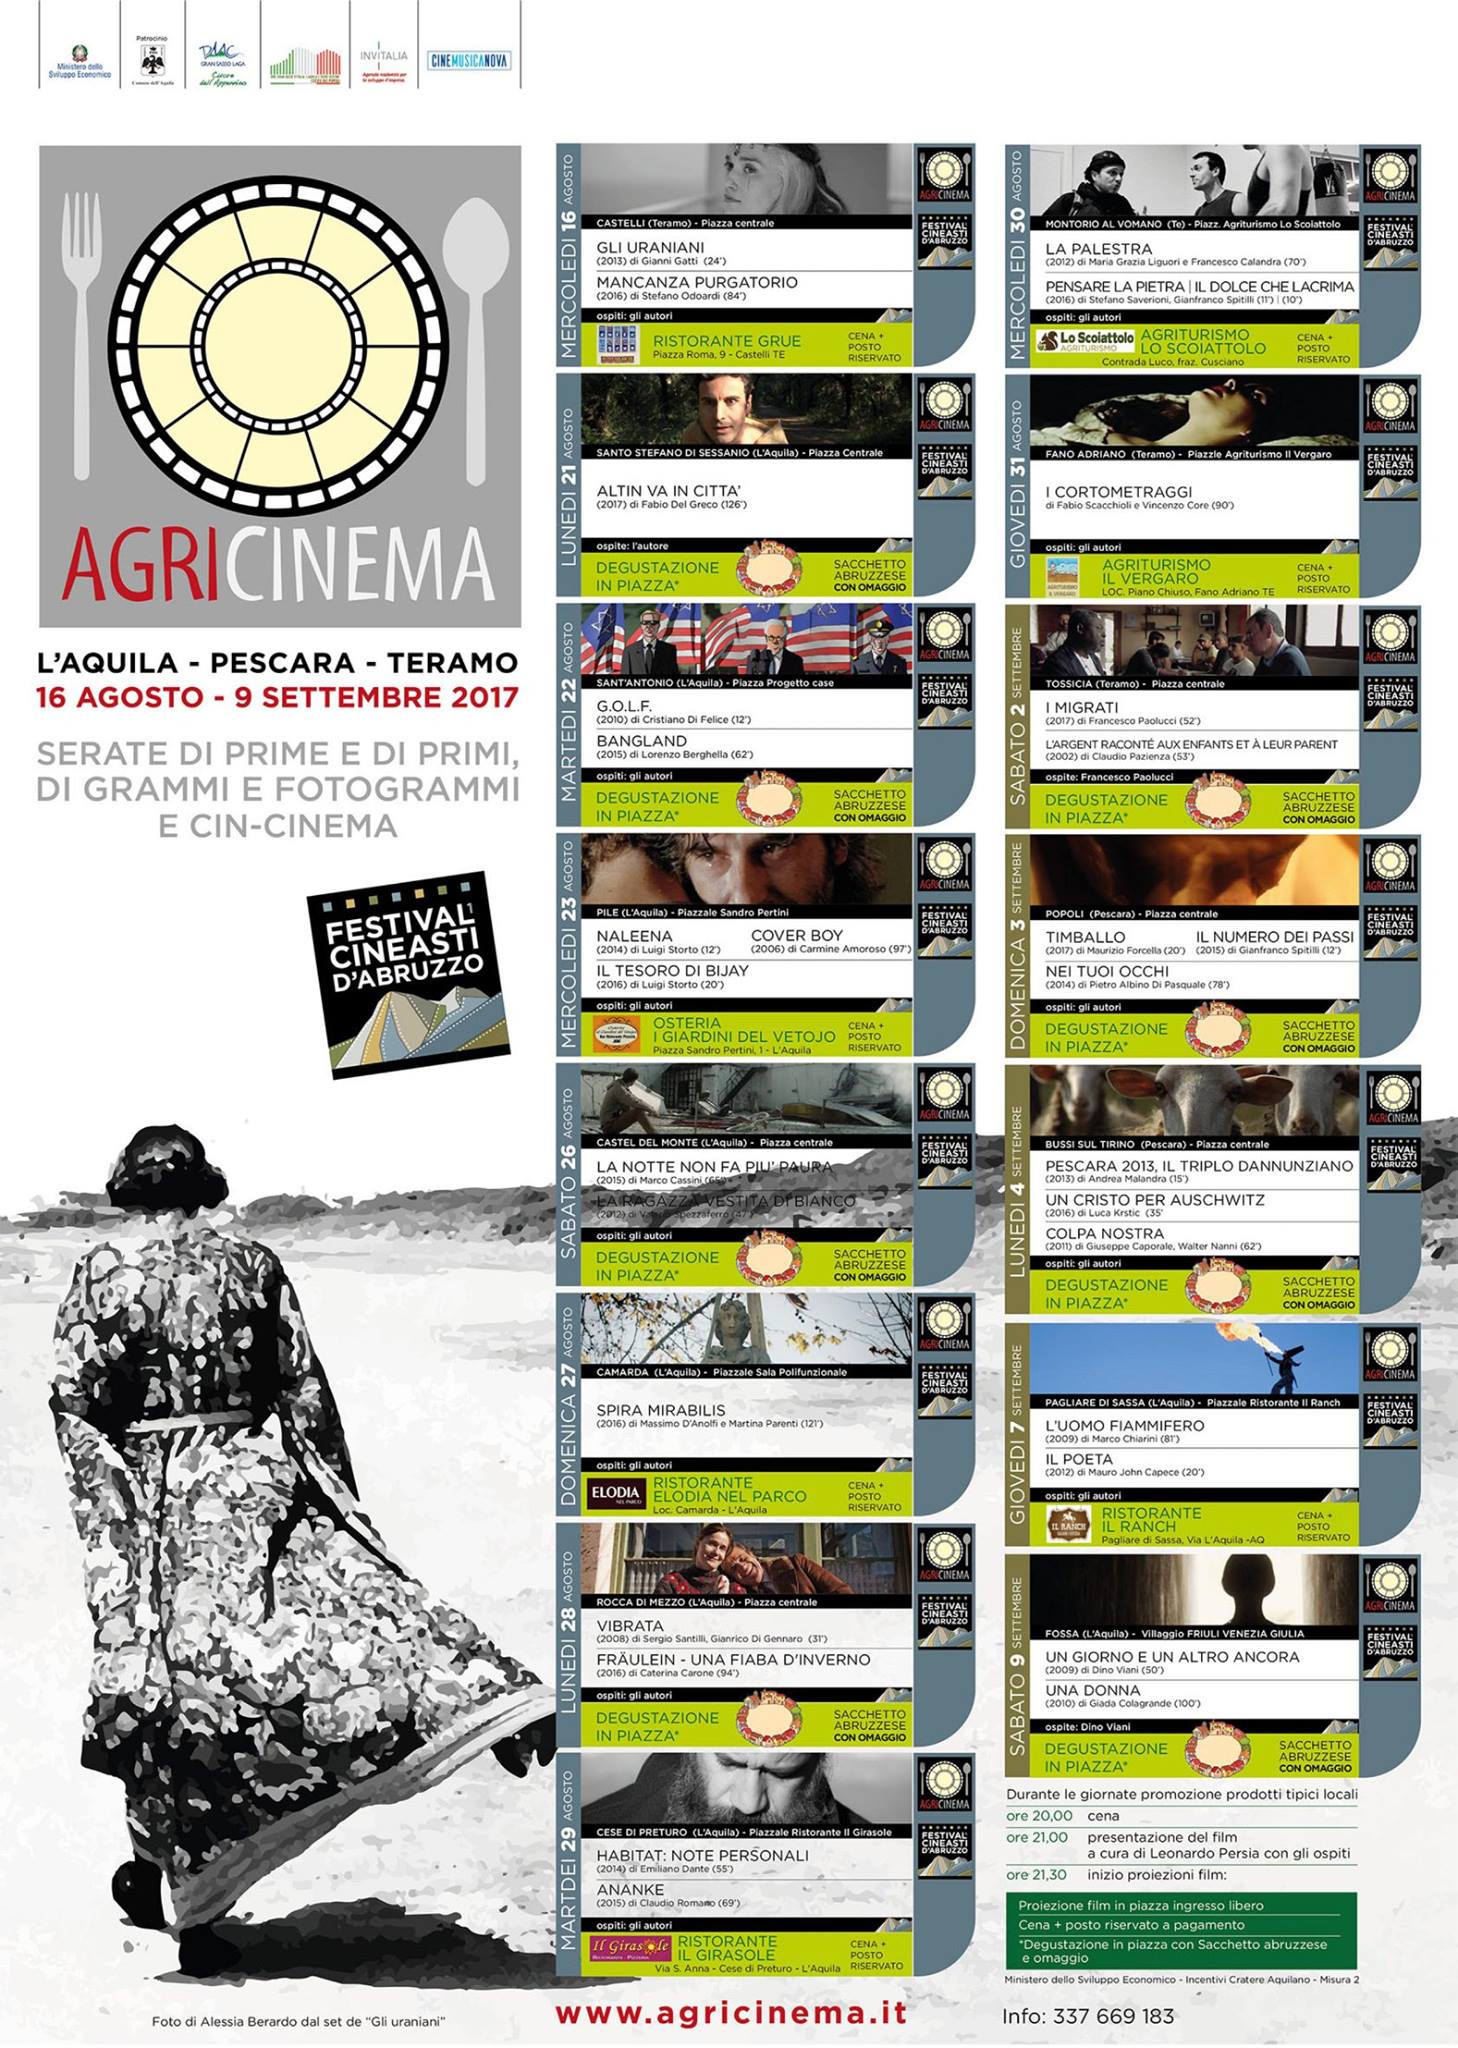 Agricinema: arriva il “Festival dei Cineasti d’Abruzzo”